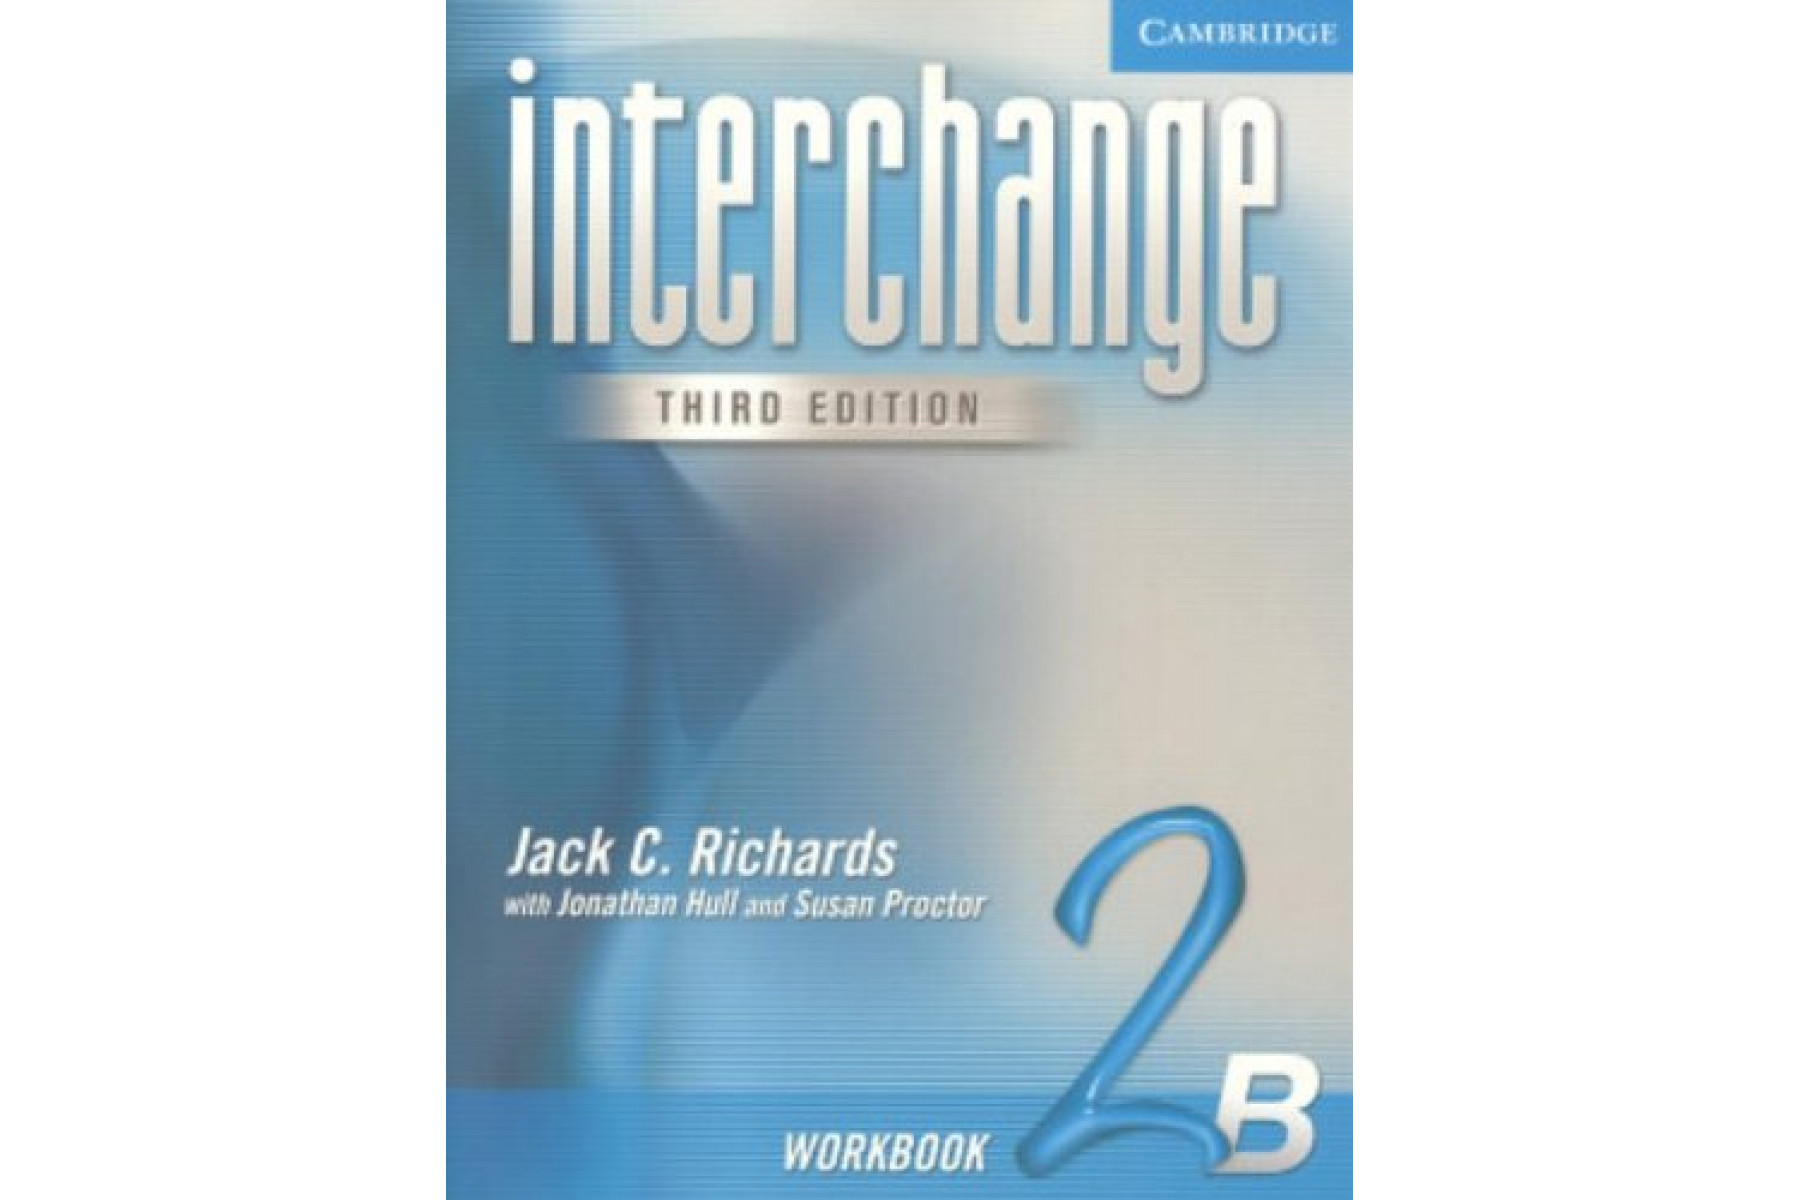 Interchange Workbook 2B (Interchange Third Edition)